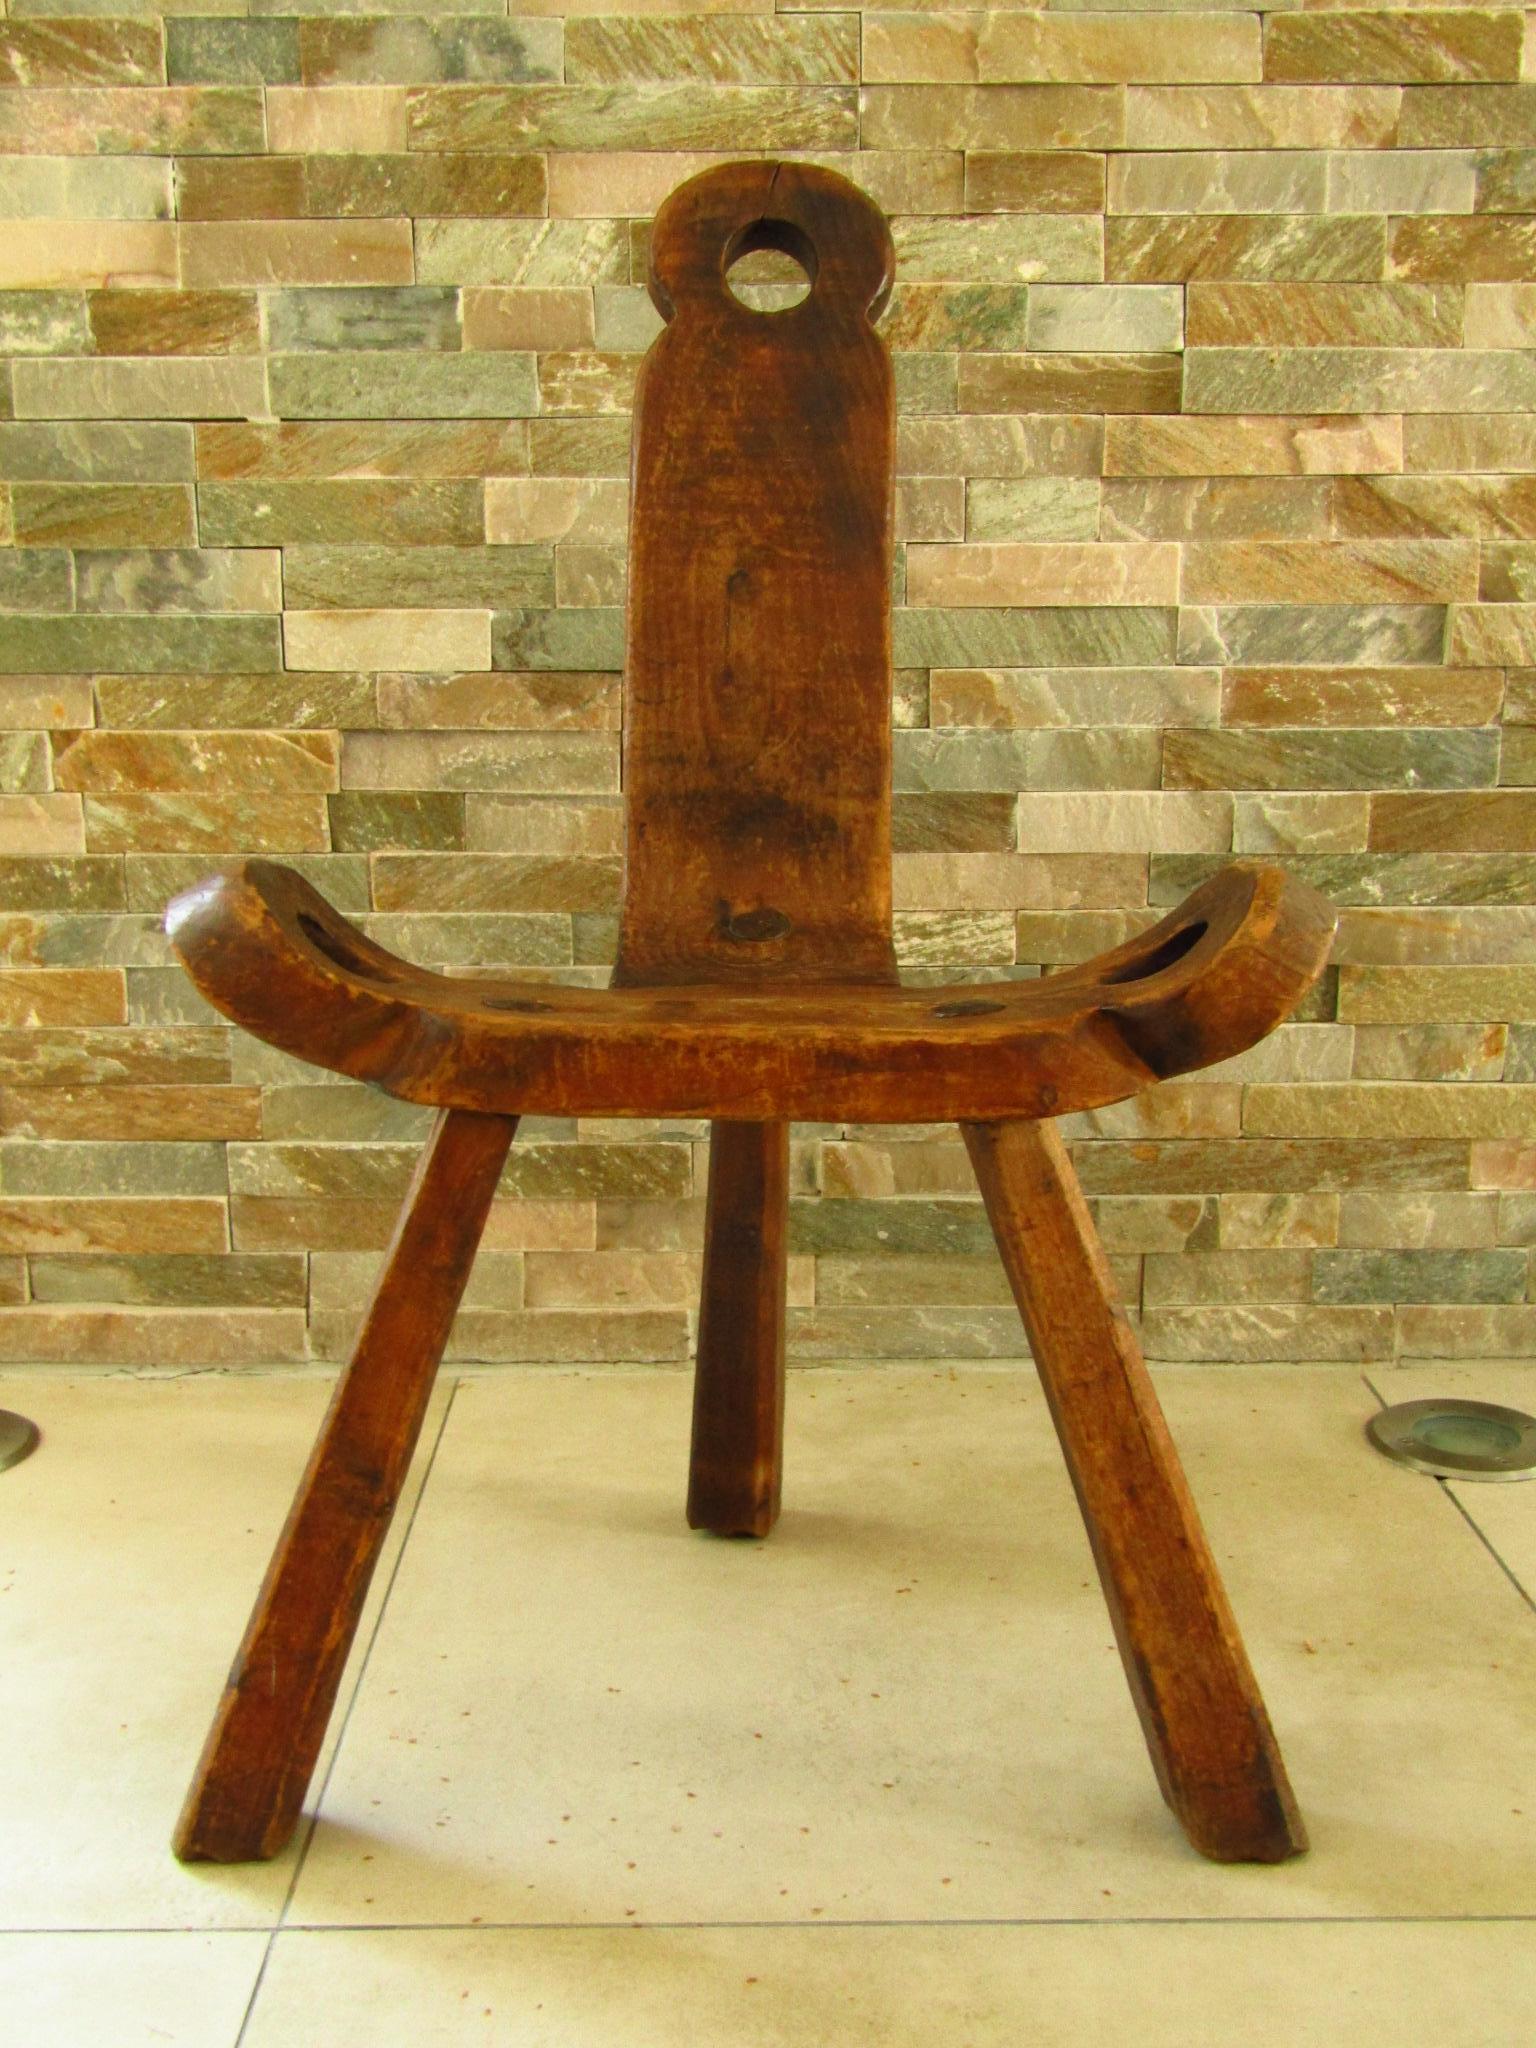 Primitive Rustic Chair Stool, Austria 18th Century 13